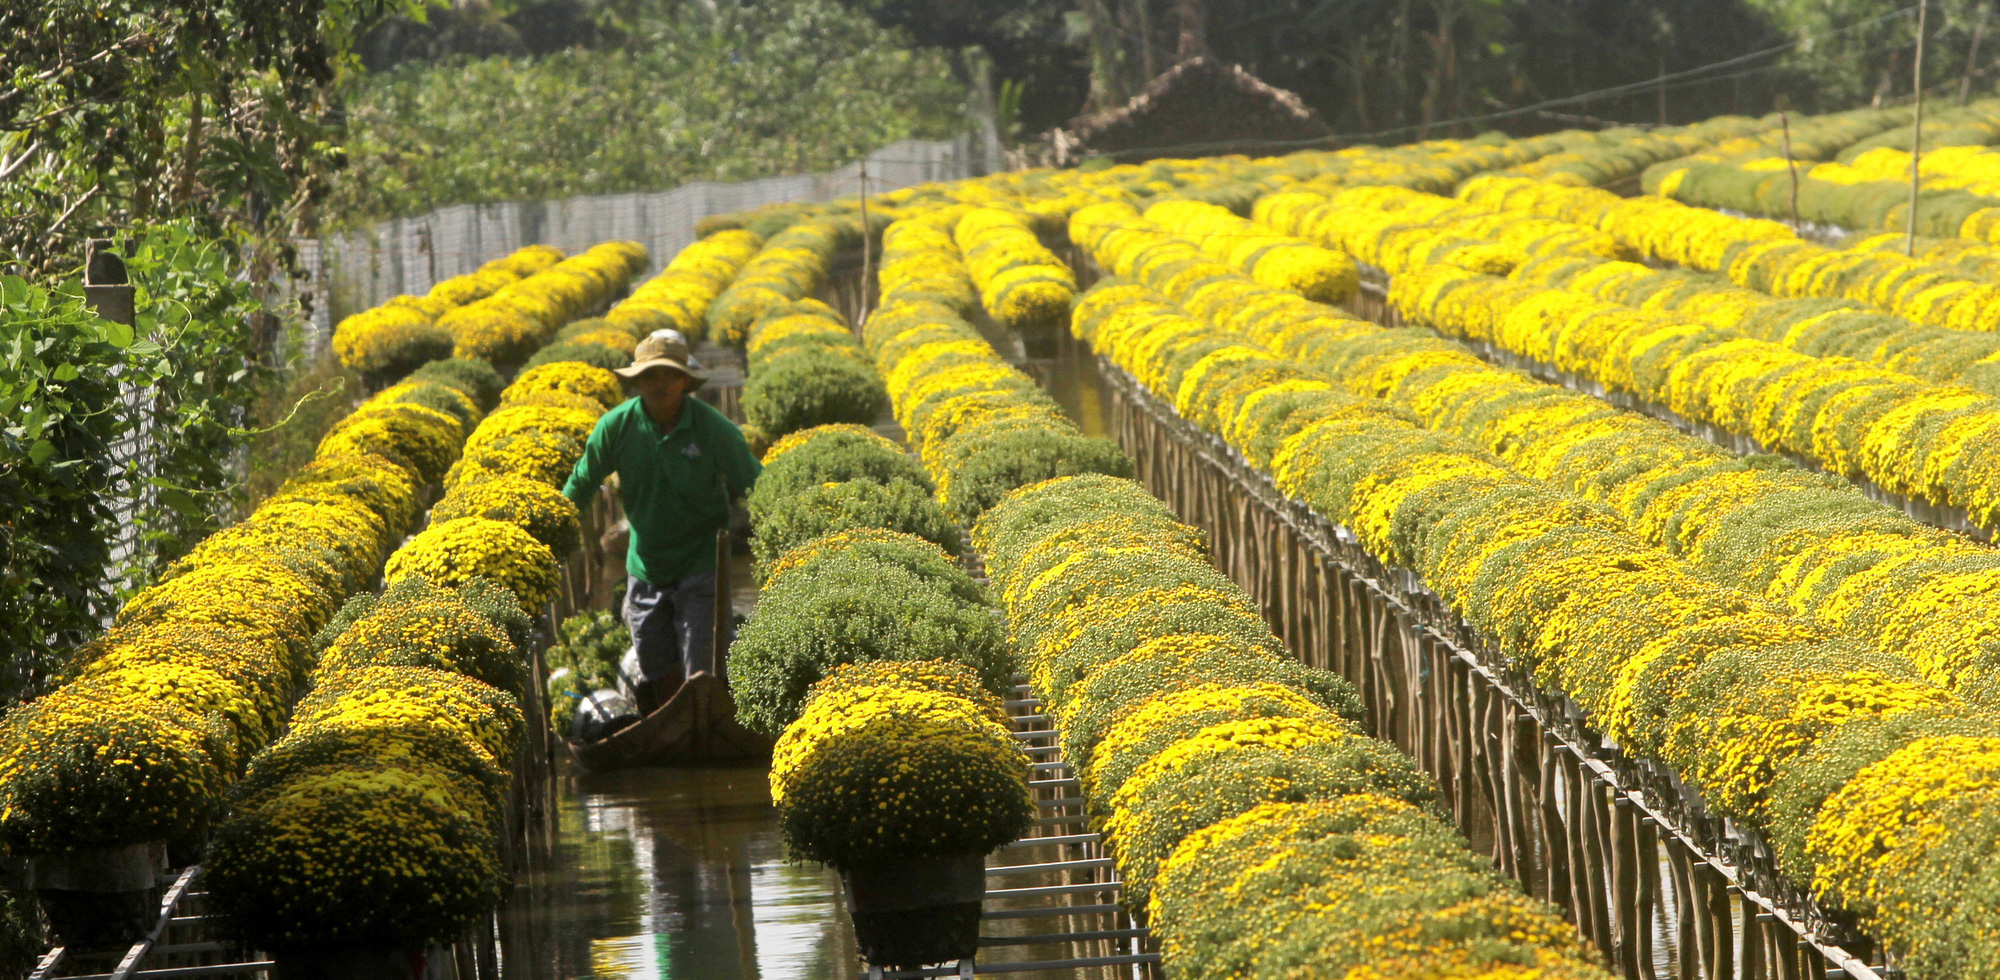 Flowers in Vietnam’s Mekong Delta ready for sale as Tet nears